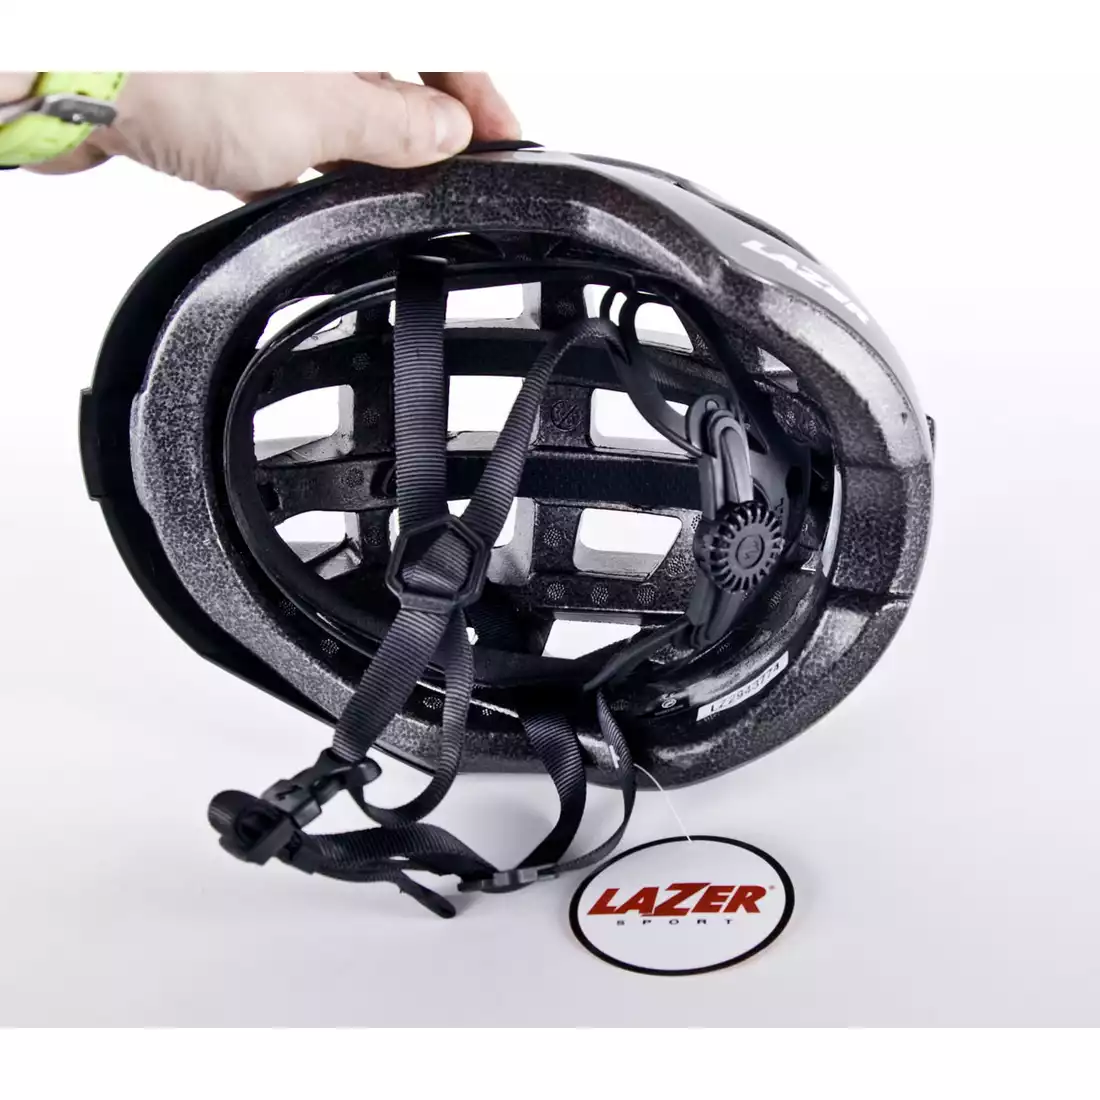 LAZER Compact kask rowerowy tytan połysk